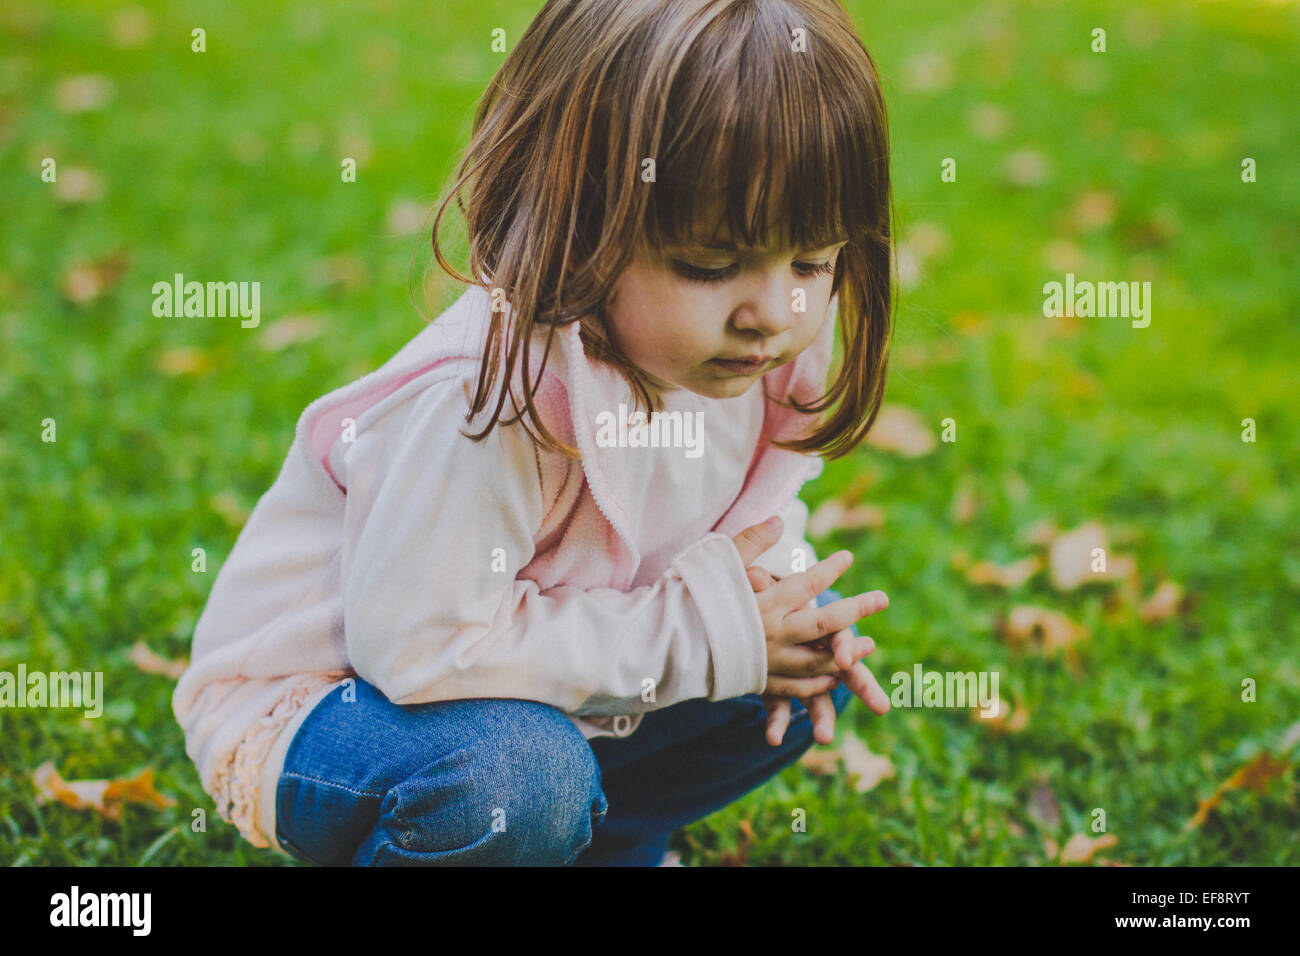 Ritratto di ragazza accovacciata in un parco pubblico Foto Stock